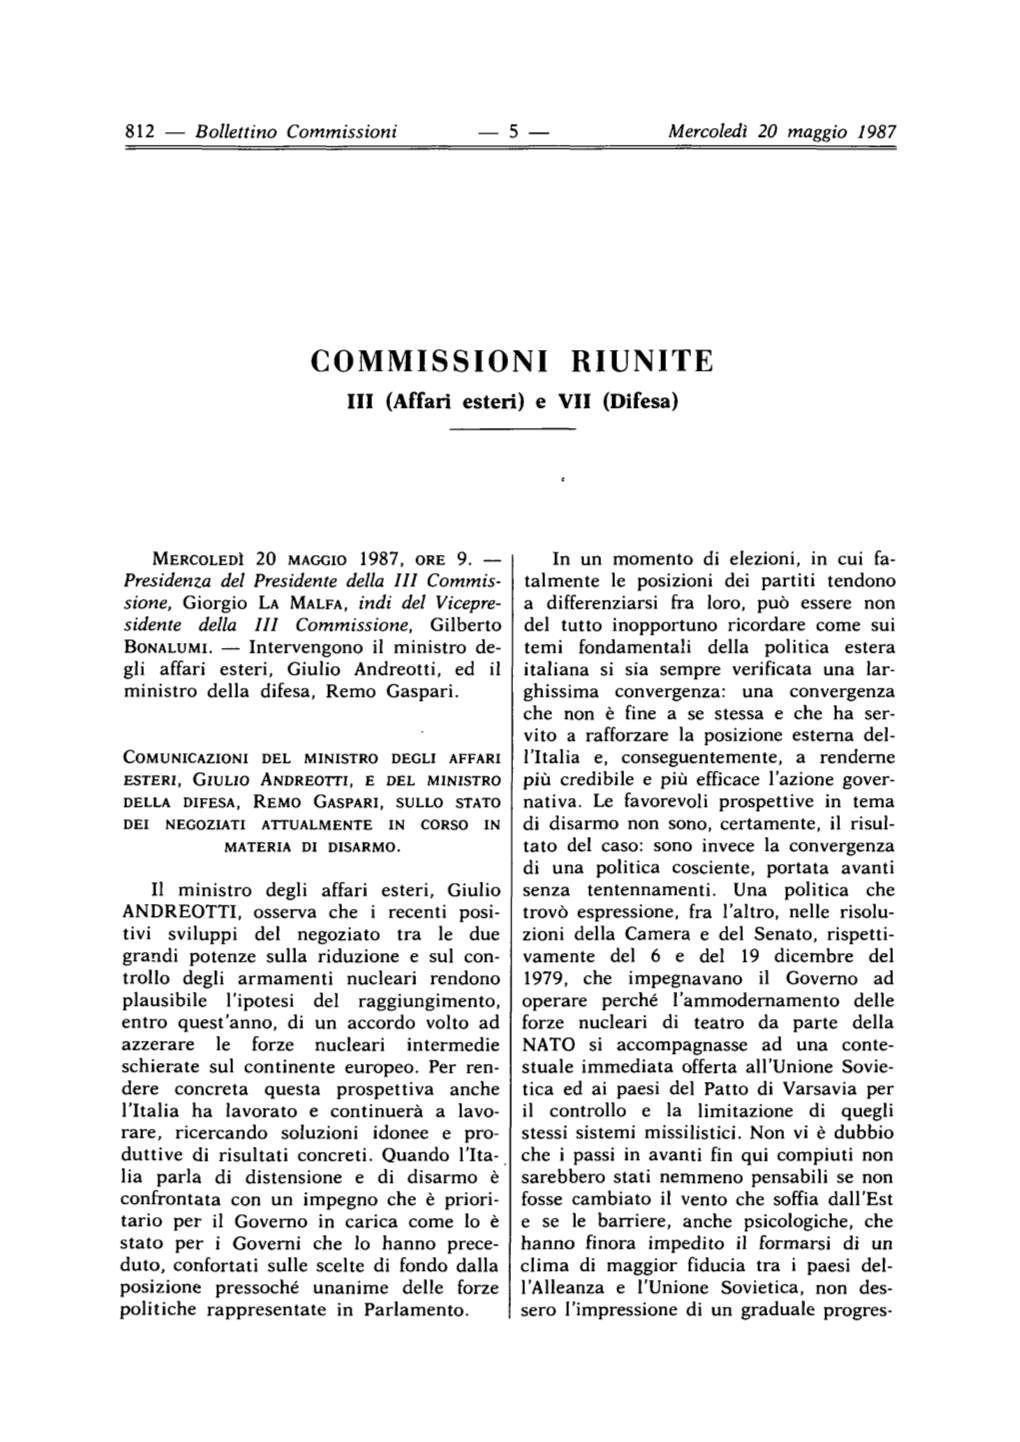 COMMISSIONI RIUNITE I11 (Affari Esteri) E VI1 (Difesa)